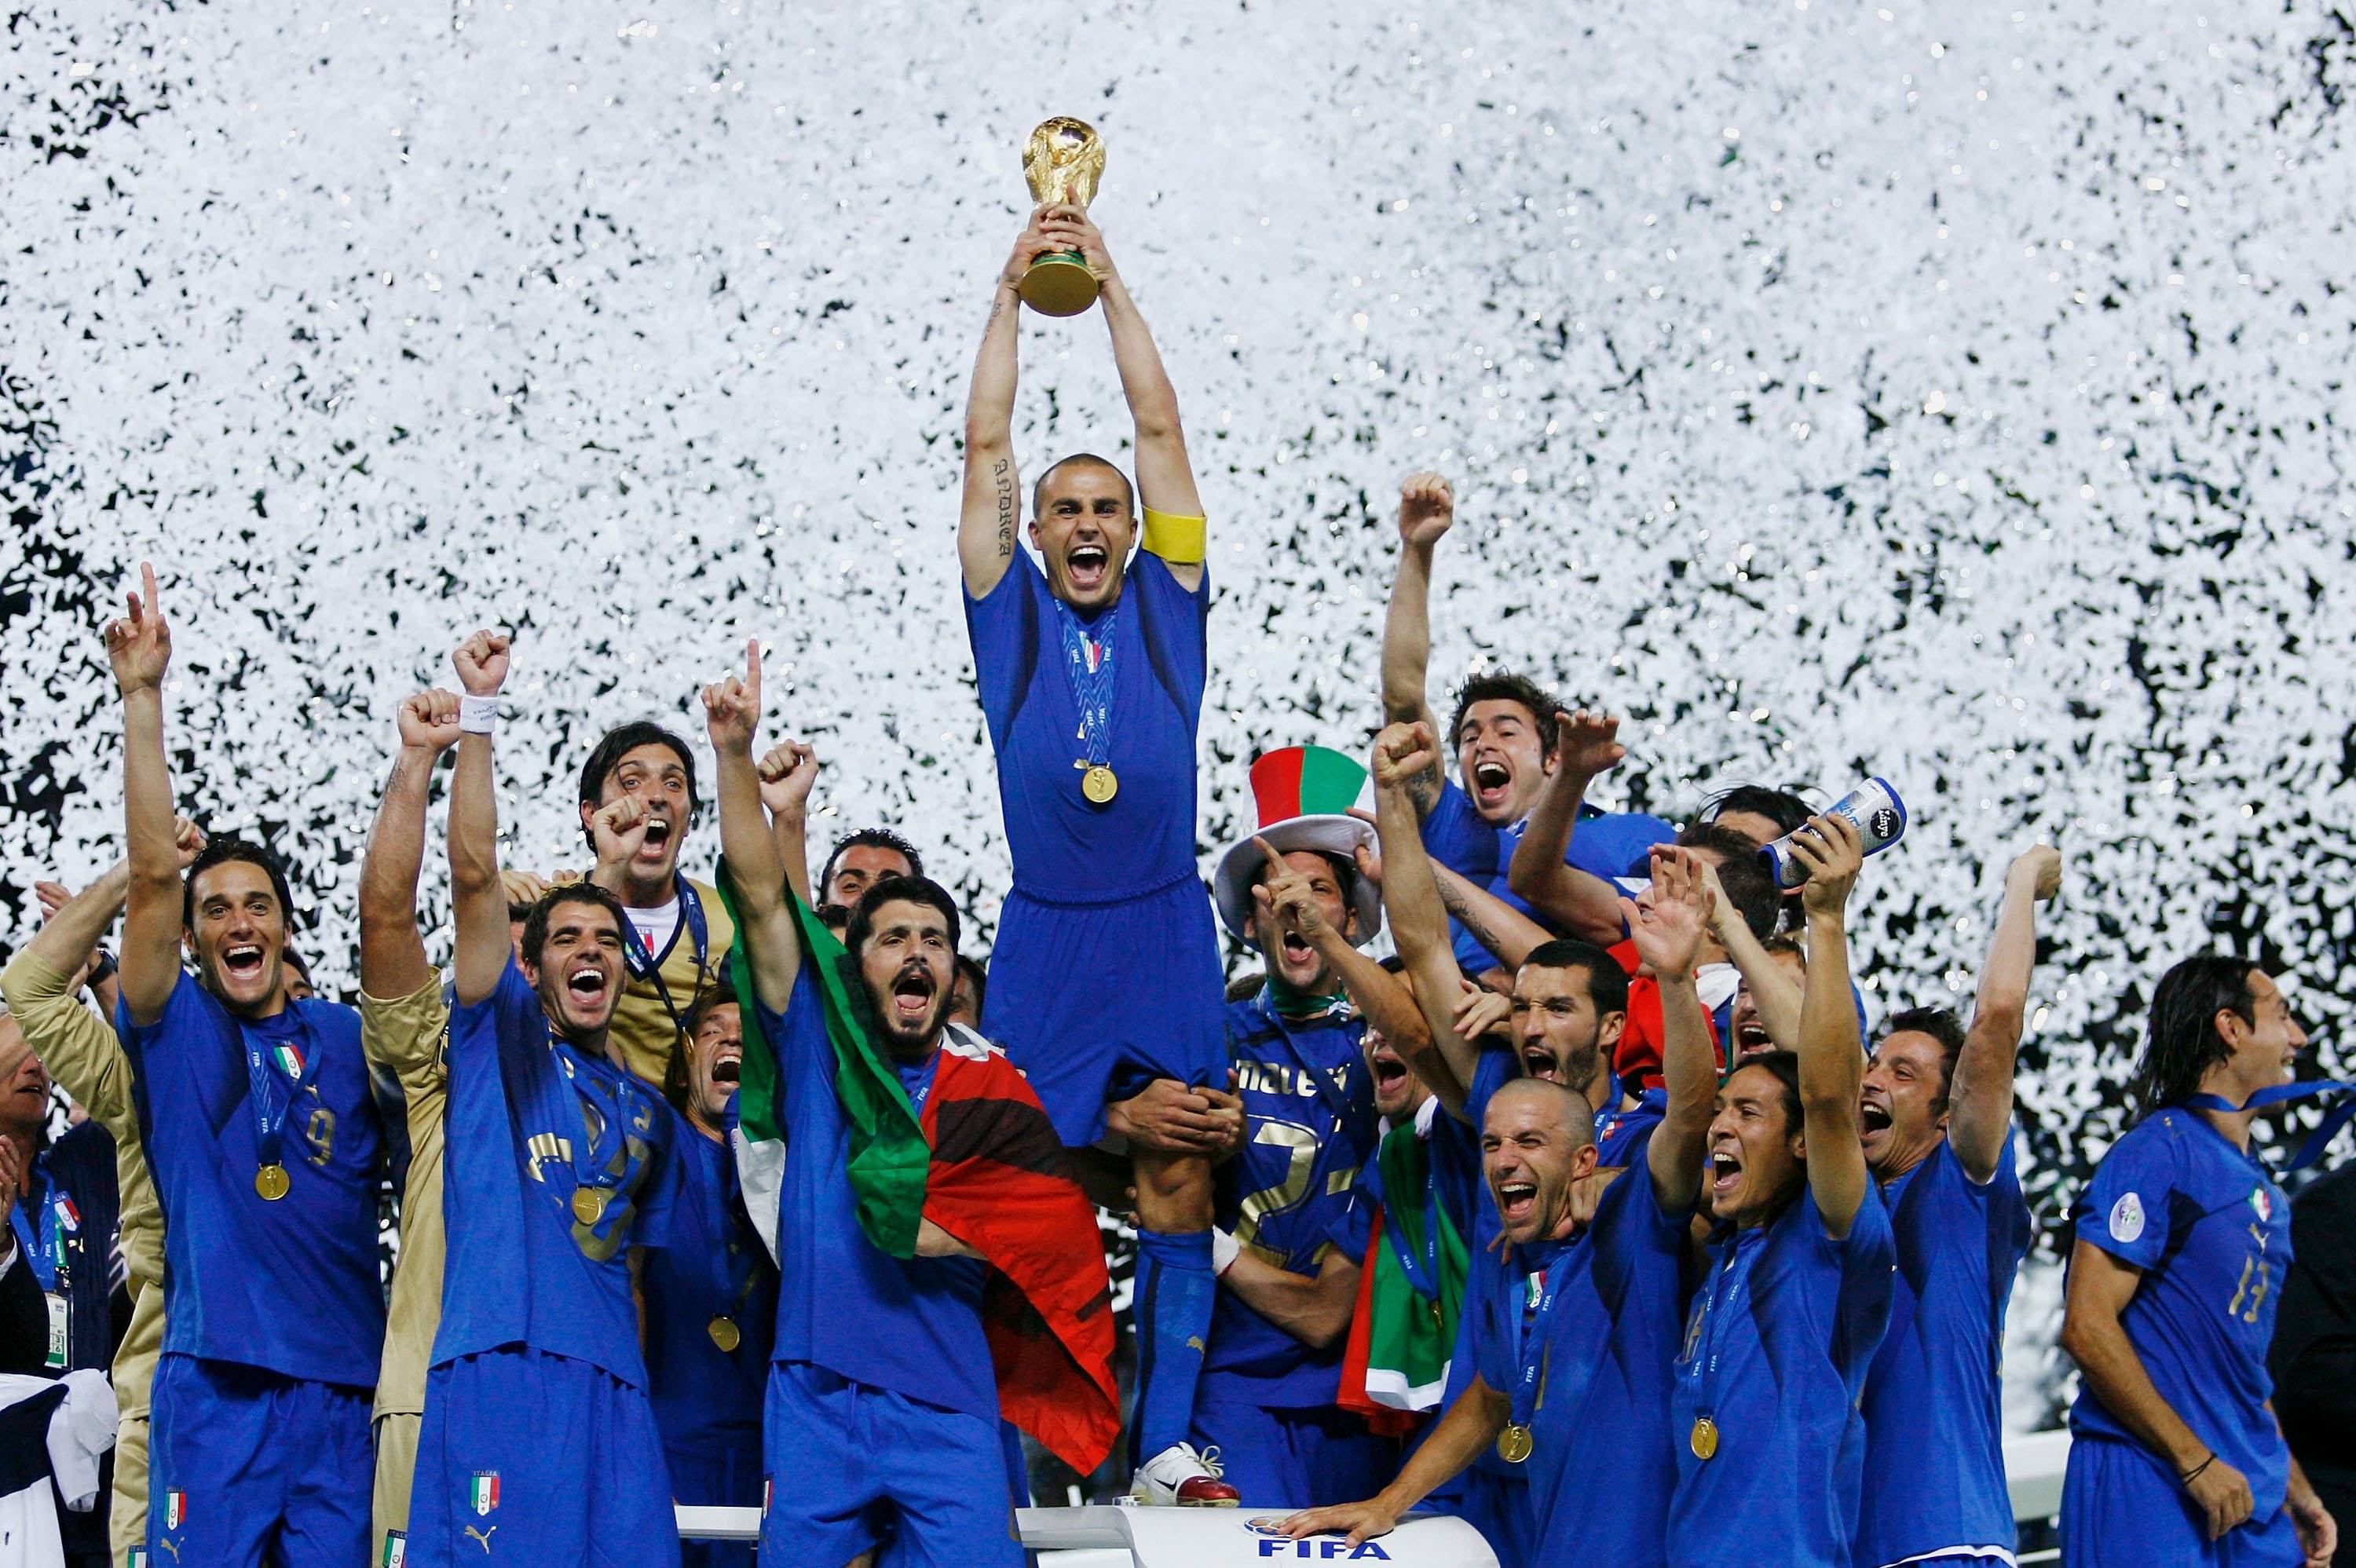 Risultati immagini per Campionato mondiale di calcio 2006 nazionale italiana in finale